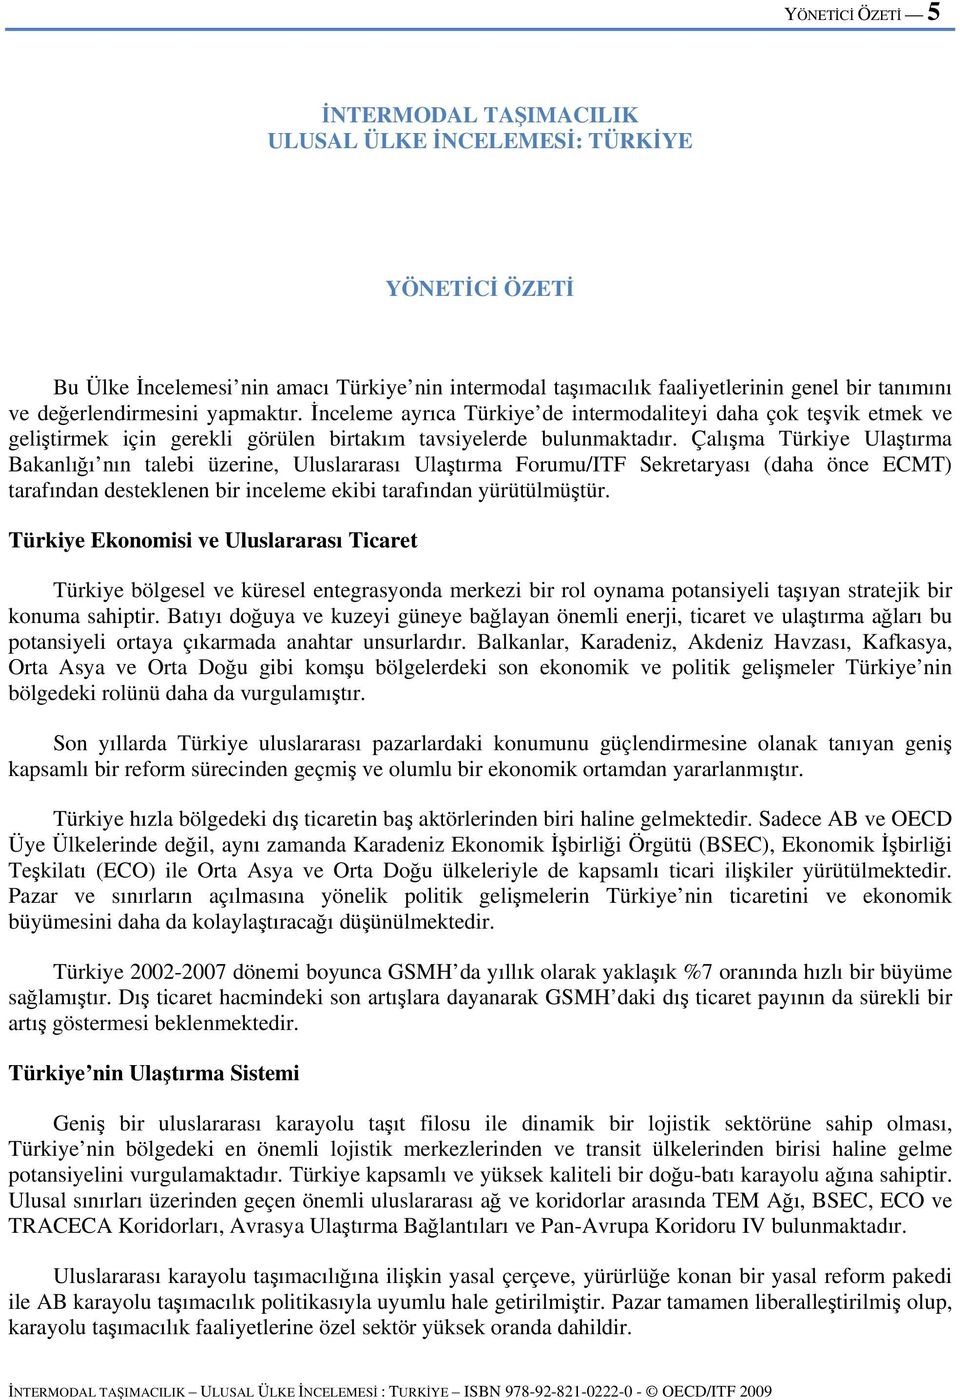 Çalışma Türkiye Ulaştırma Bakanlığı nın talebi üzerine, Uluslararası Ulaştırma Forumu/ITF Sekretaryası (daha önce ECMT) tarafından desteklenen bir inceleme ekibi tarafından yürütülmüştür.